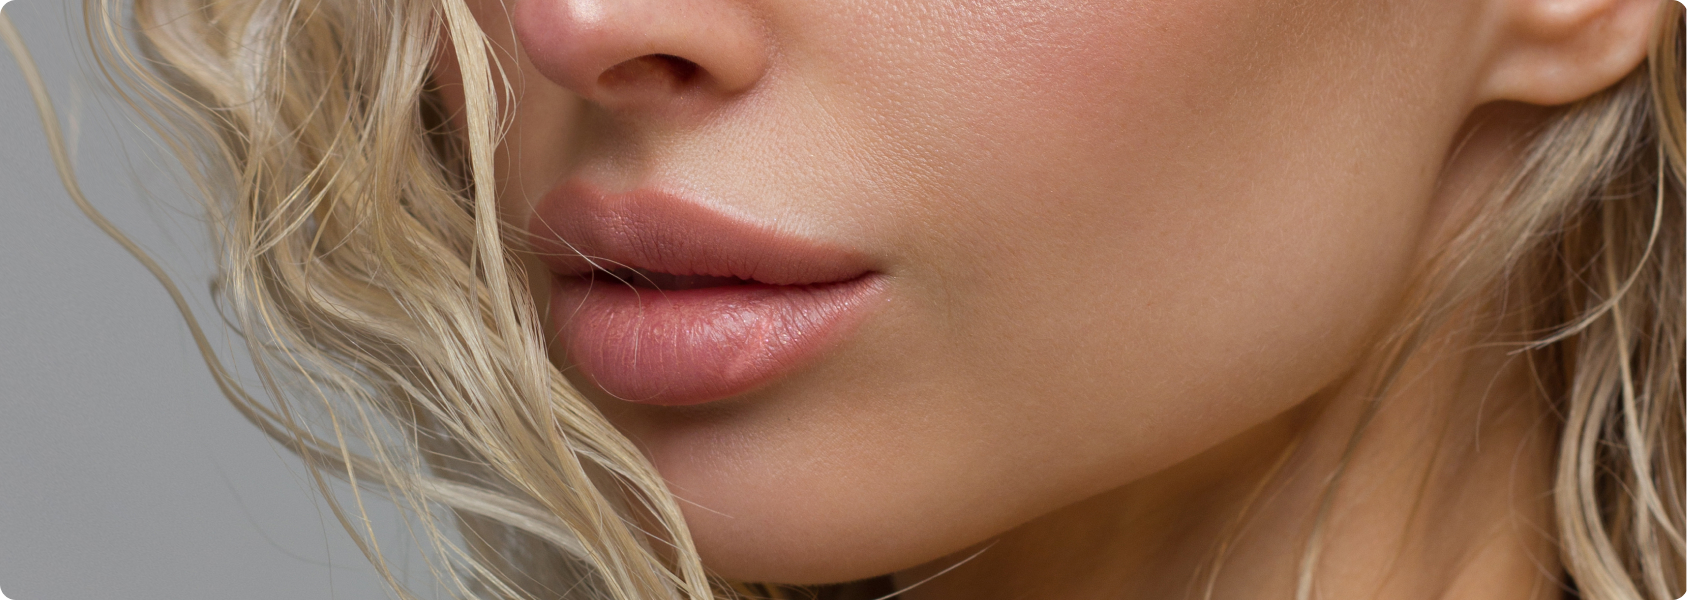 Lippen aufspritzen (Lippenvergrößerung) - Wie läuft eine chirurgische Lippenvergrößerung ab?